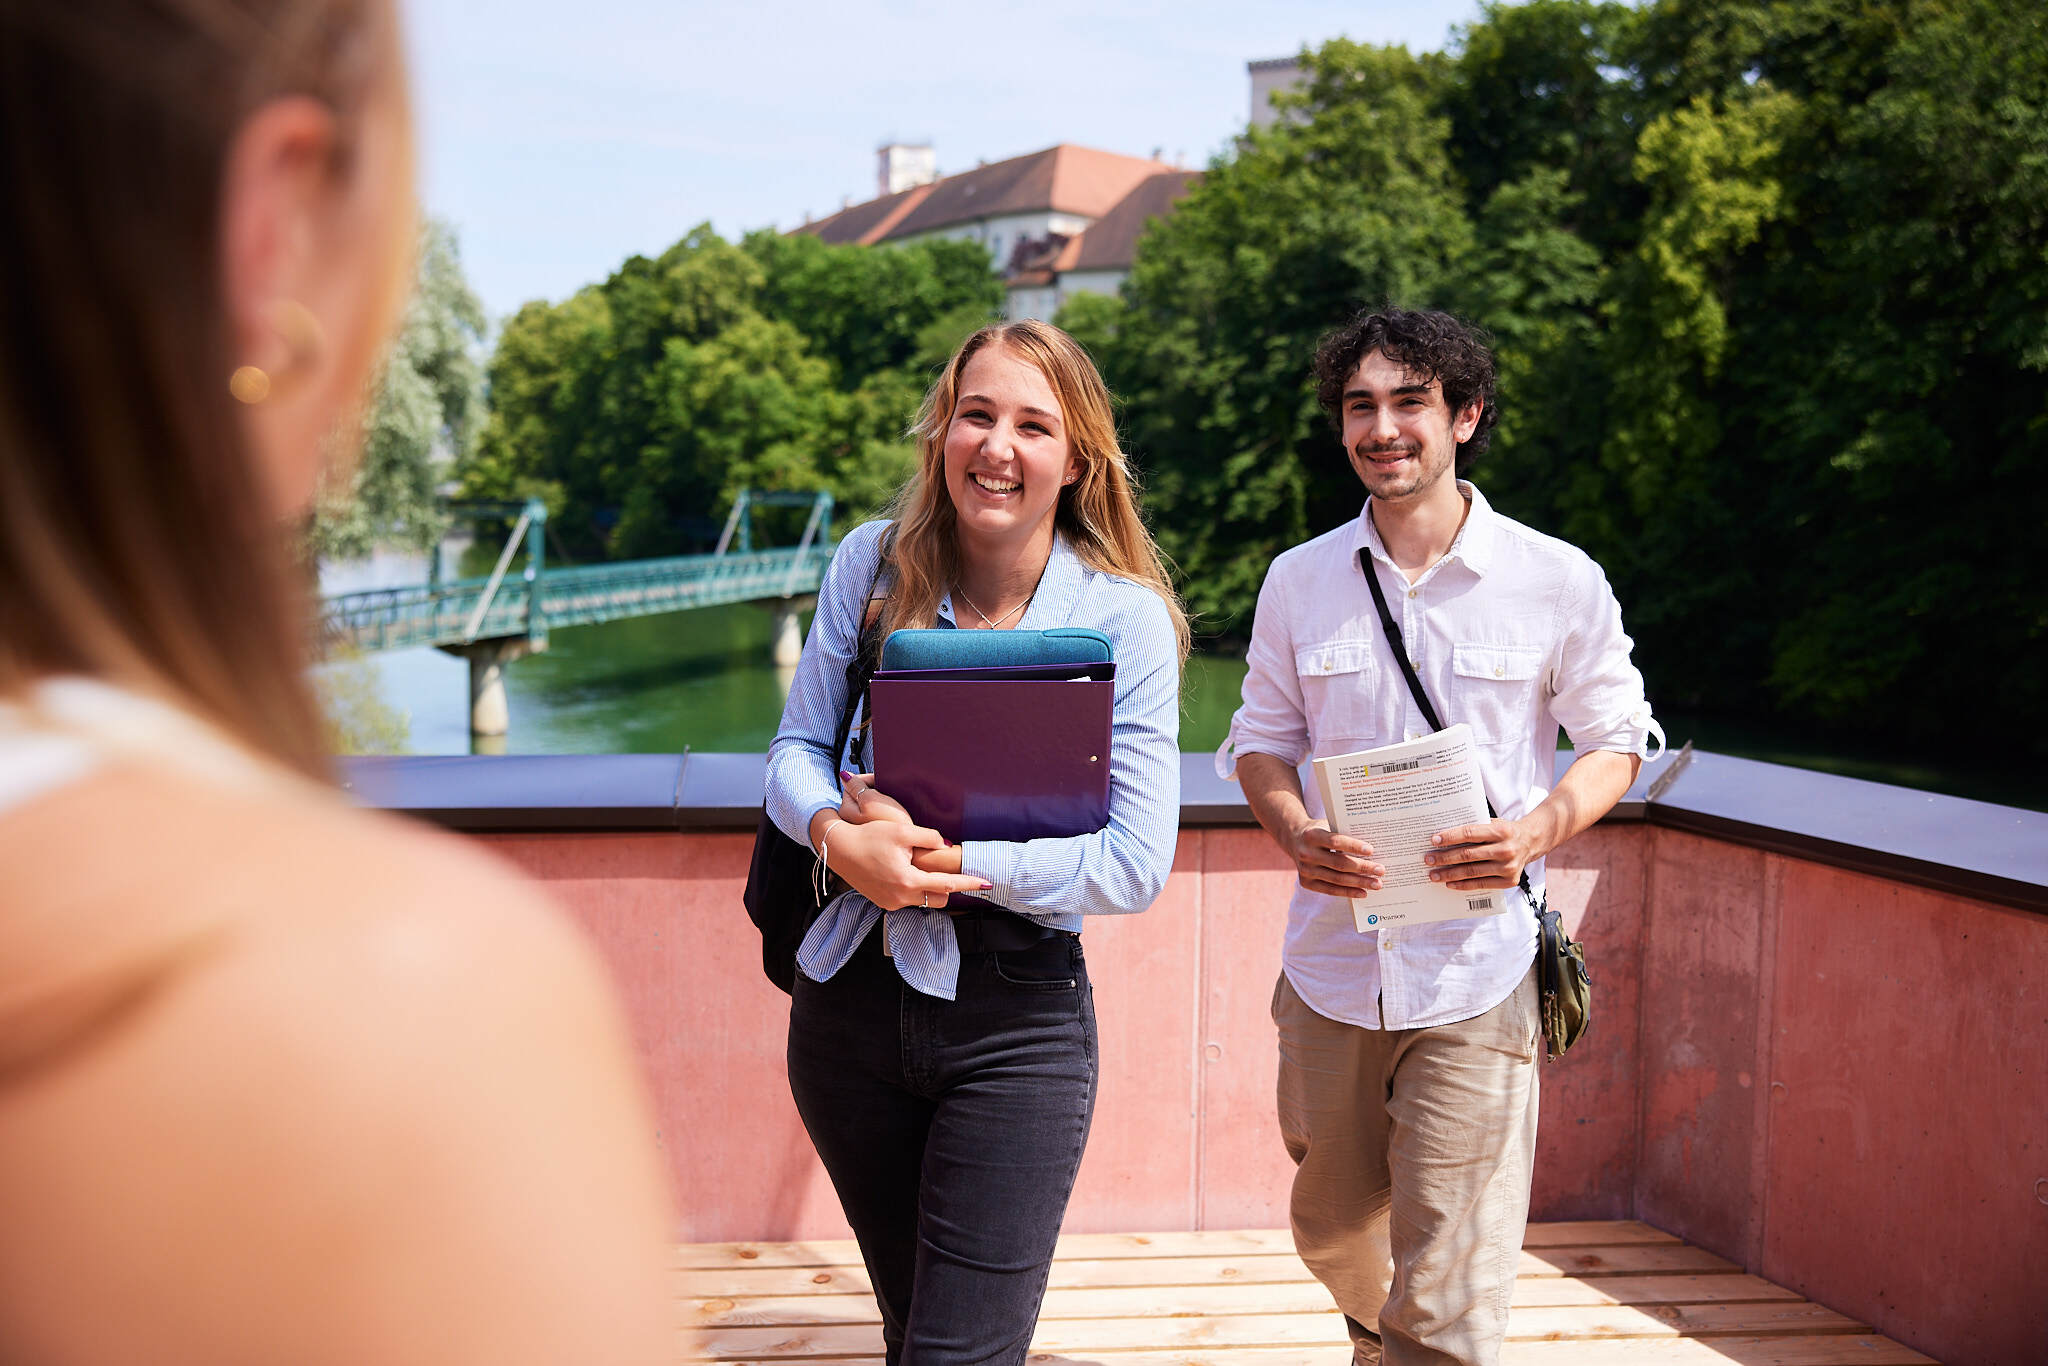 zwei junge Studenten gehen auf eine unscharfe Studentin im Vordergrund zu, auf einer Terrasse vor dem Fluss Steyr mit Büchern und Laptops in ihren Händen.